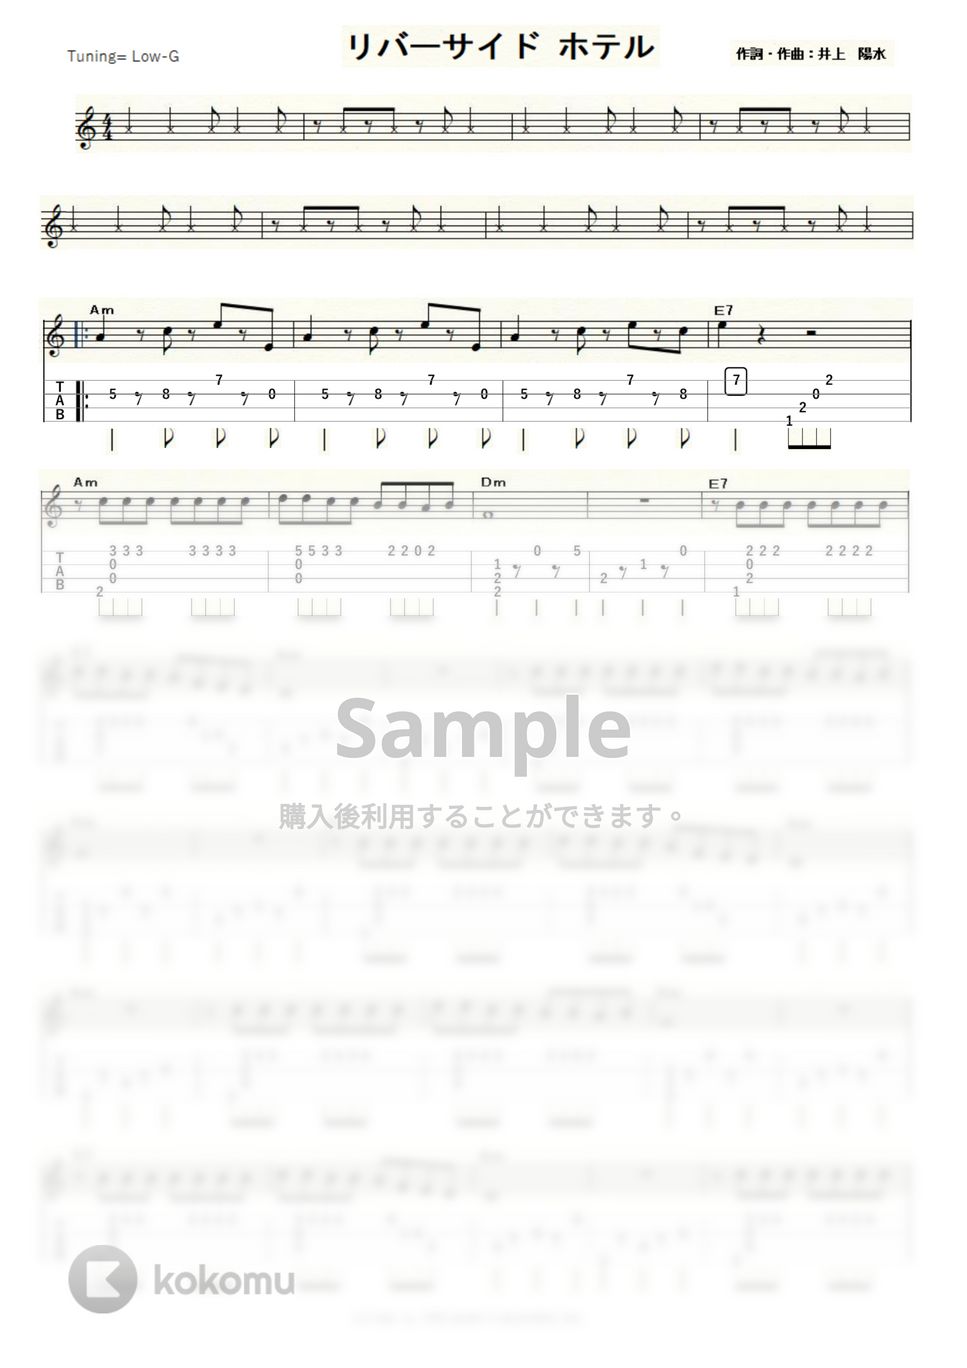 井上陽水 - リバーサイド・ホテル (ｳｸﾚﾚｿﾛ / Low-G / 中級) by ukulelepapa